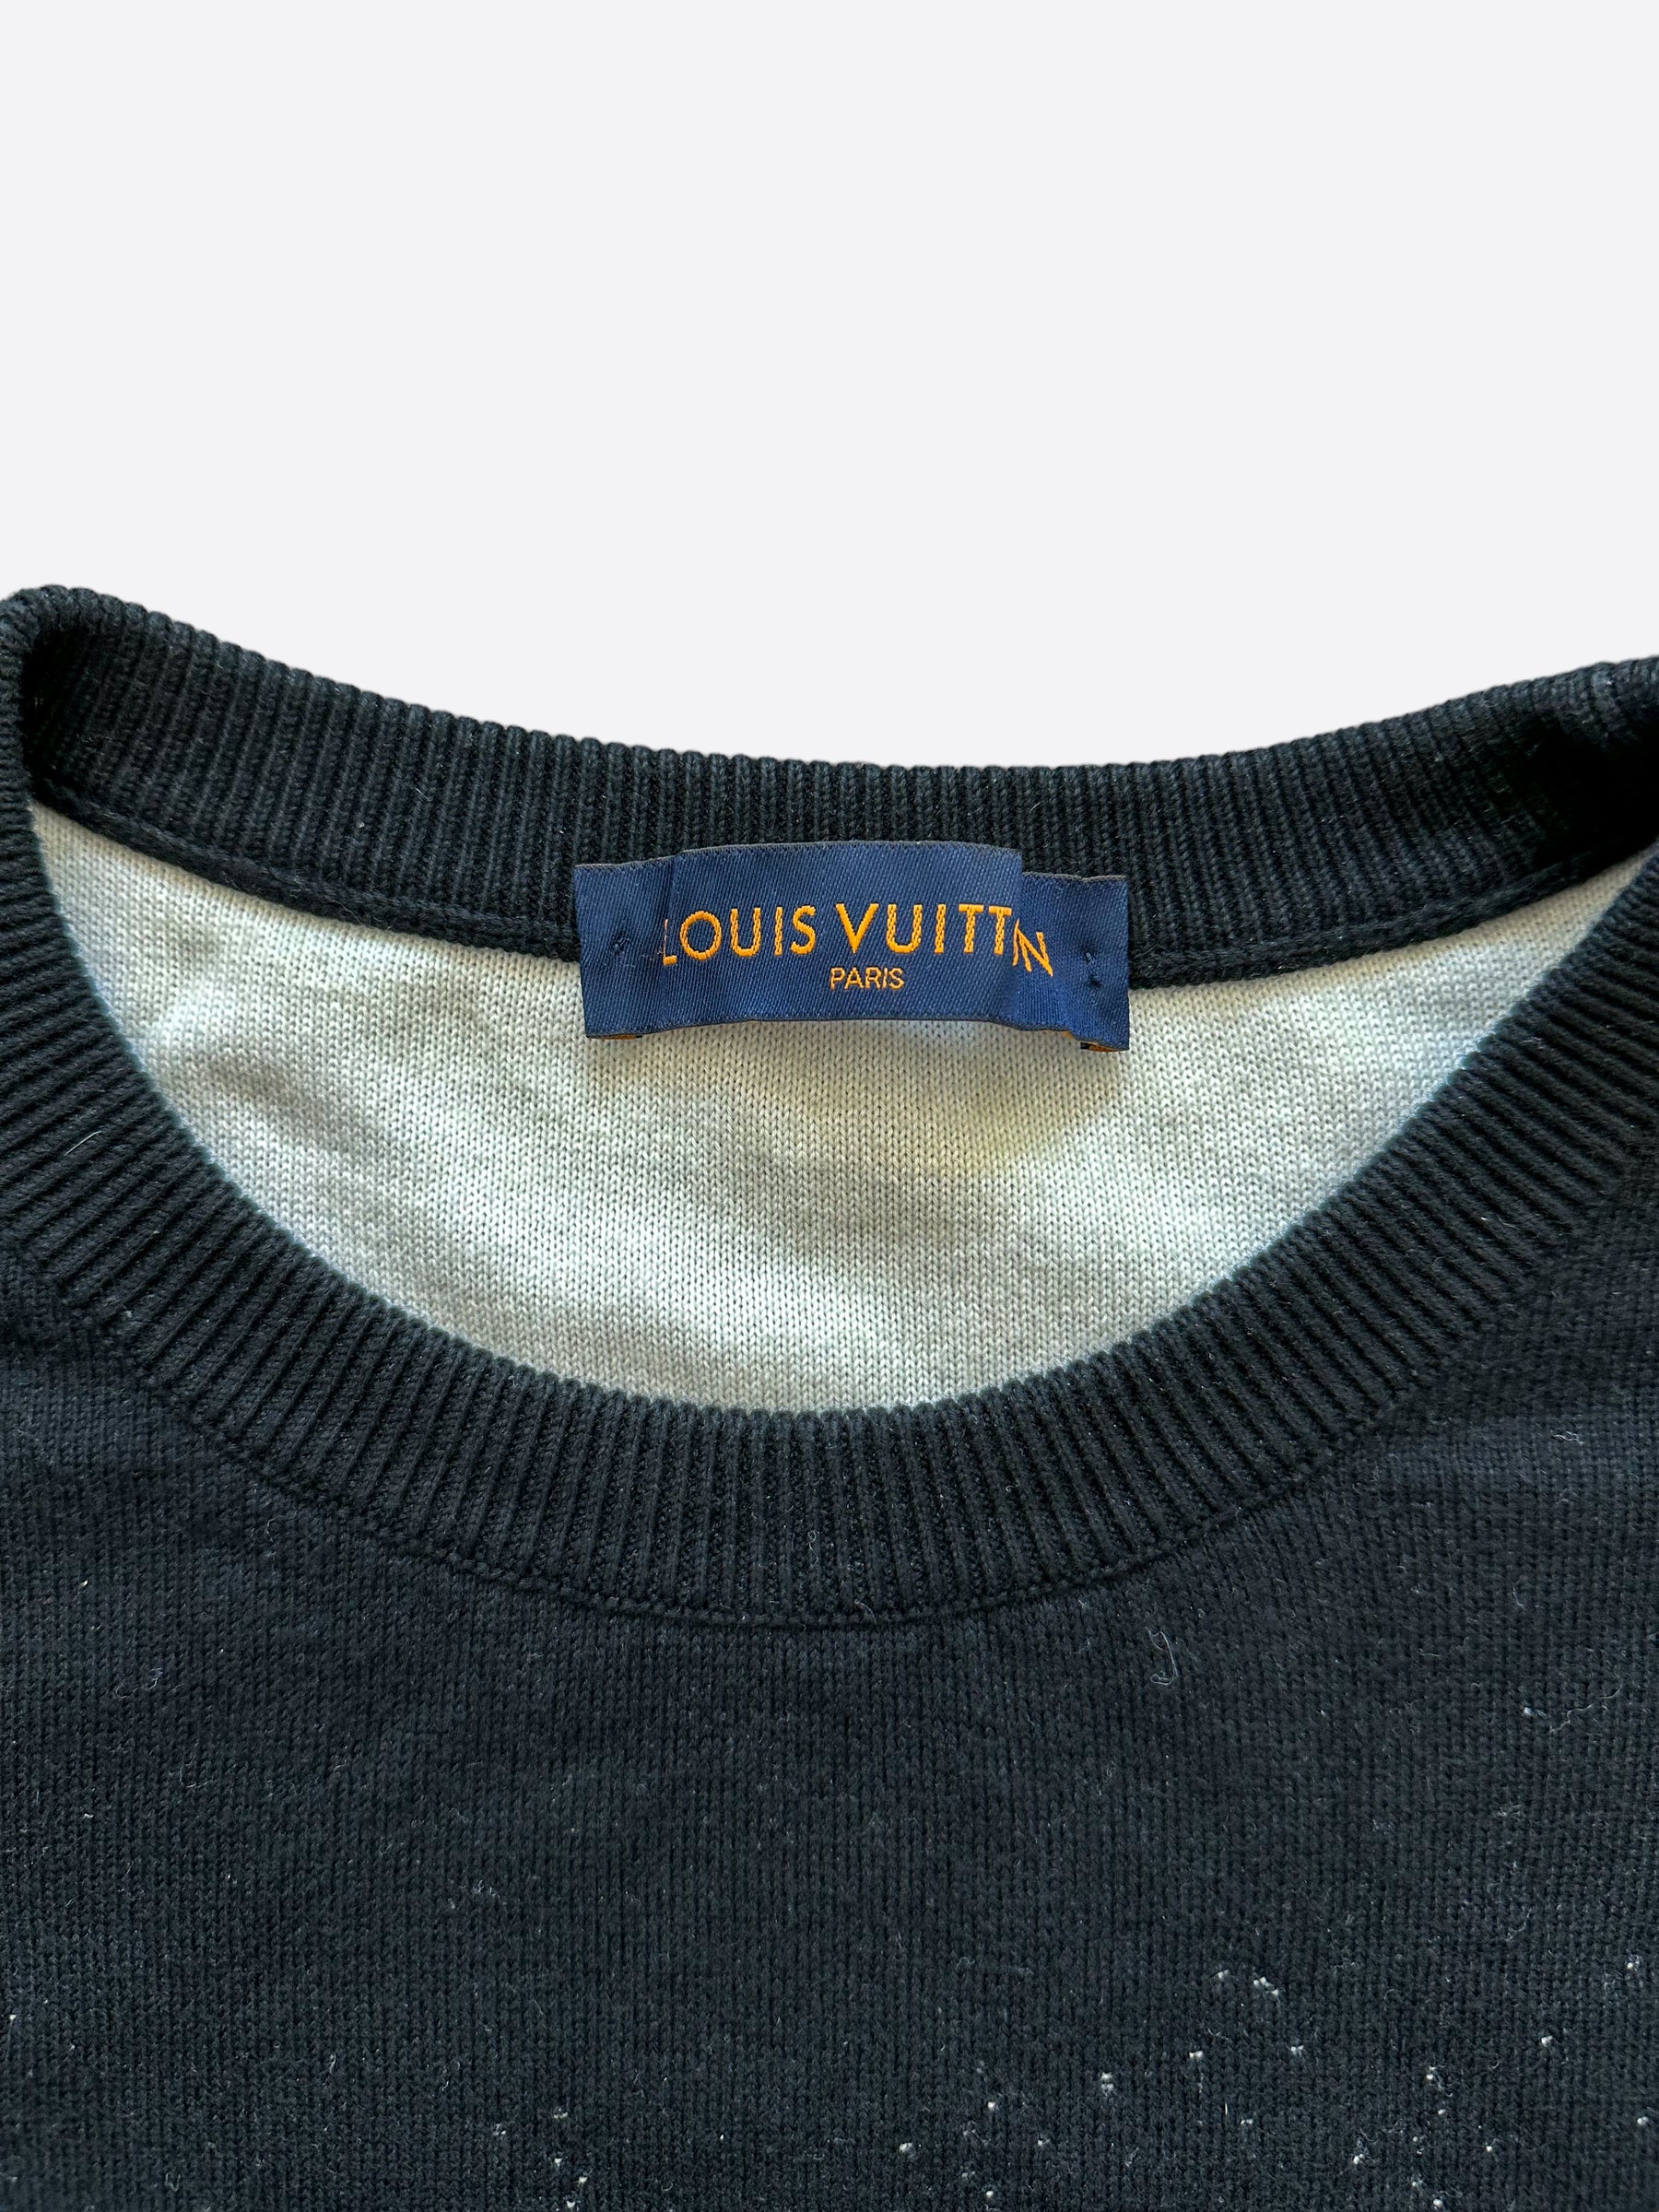 Louis Vuitton Gradient Monogram Noir Size S for Sale in Boca